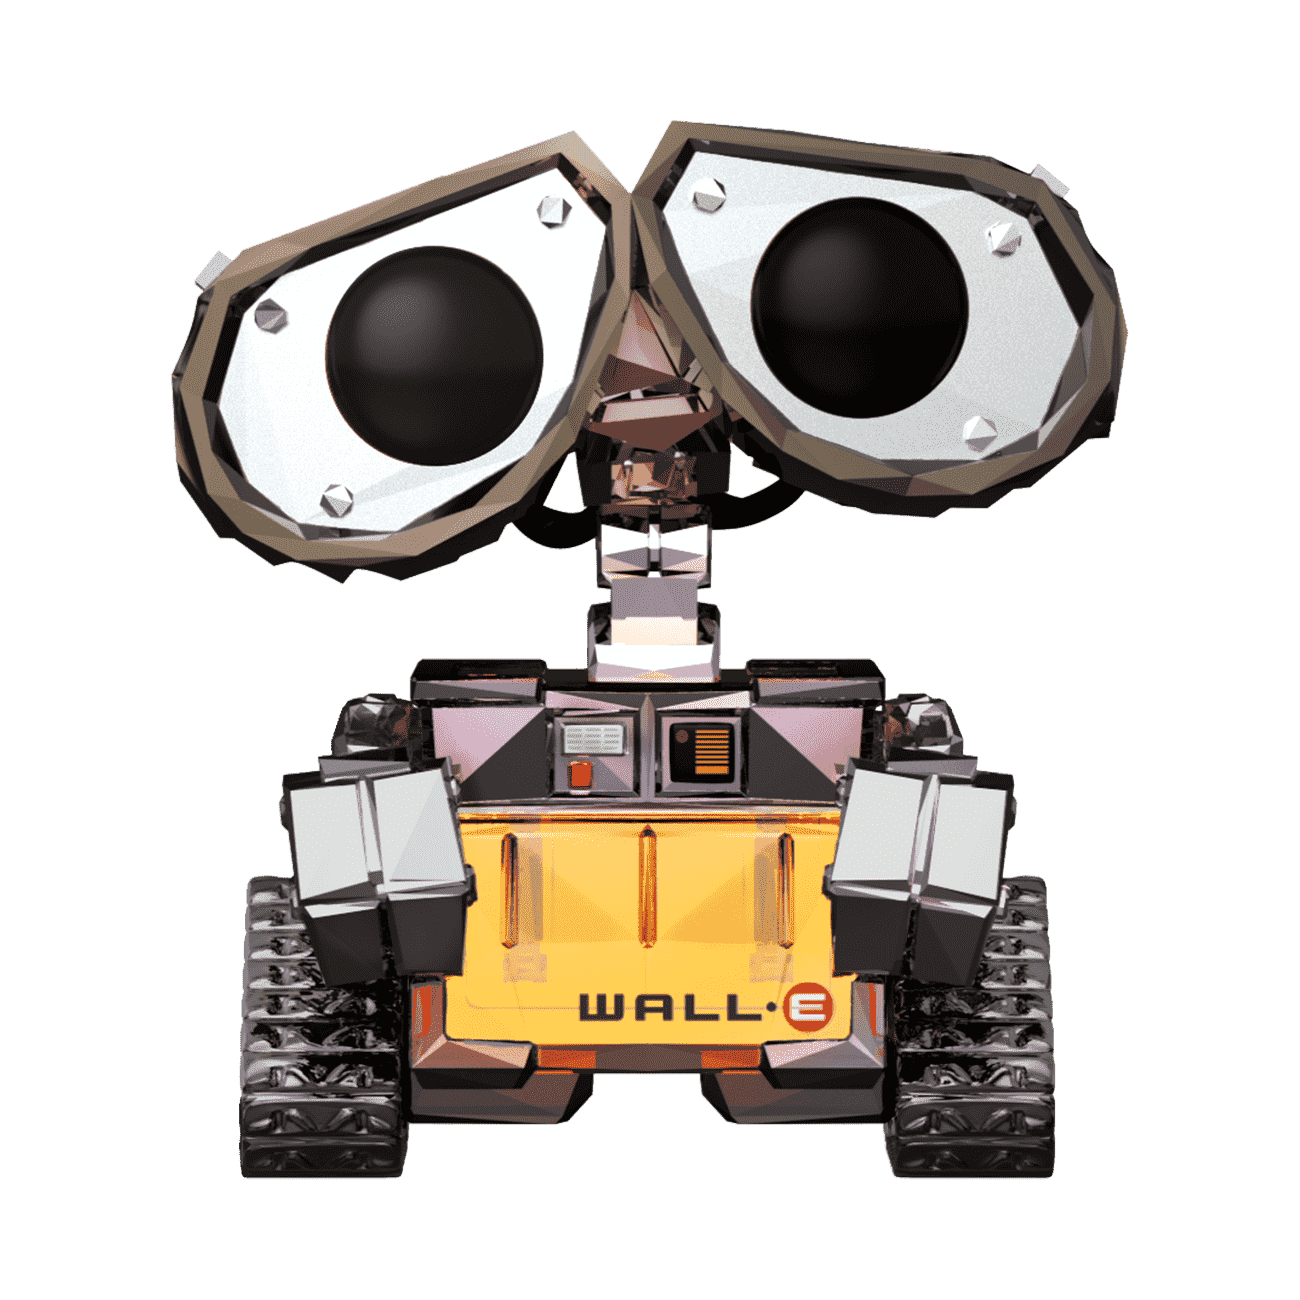 WALL•E